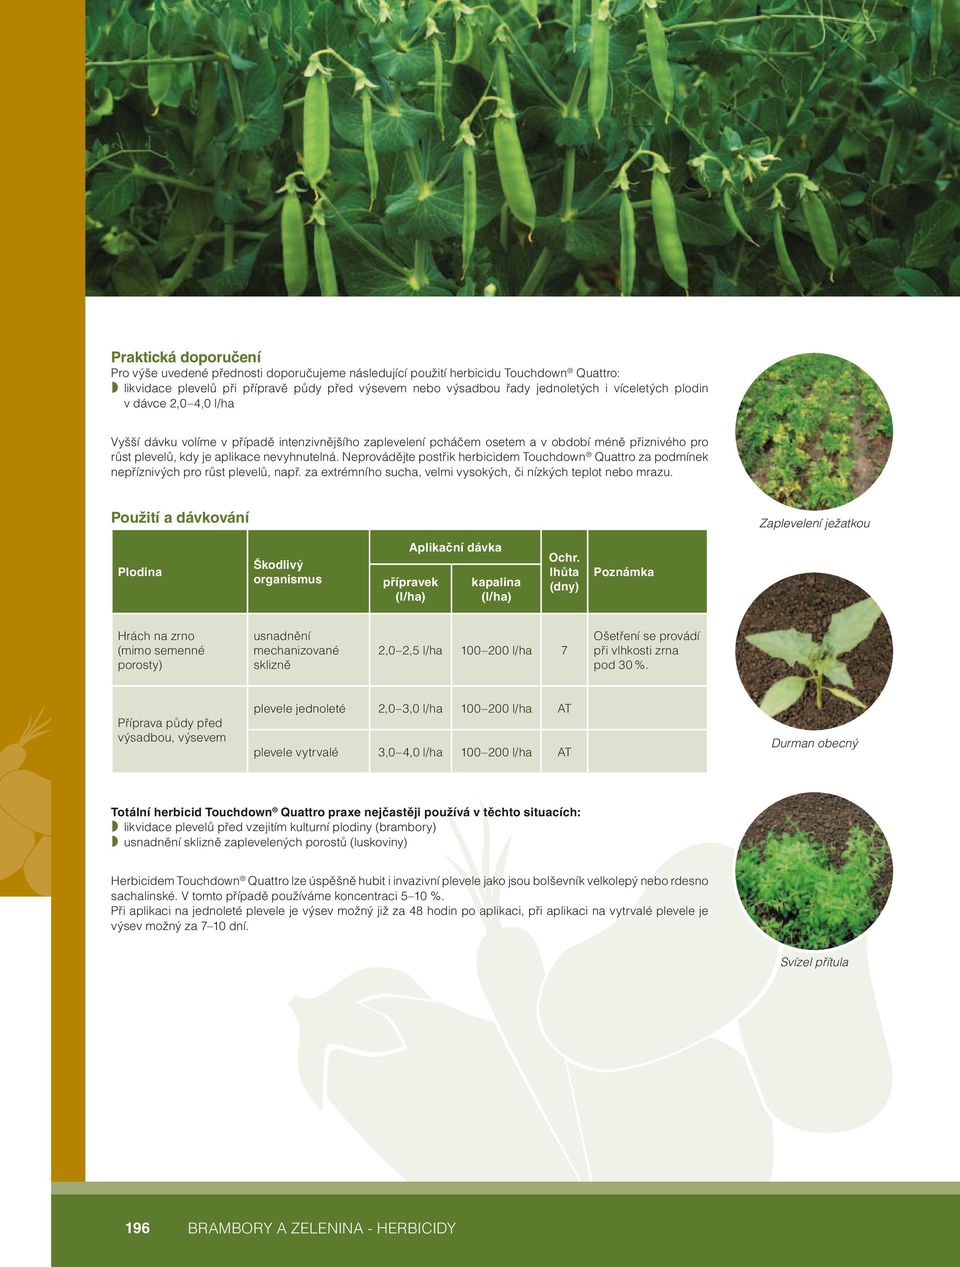 Neprovádějte postřik herbicidem Touchdown Quattro za podmínek nepříznivých pro růst plevelů, např. za extrémního sucha, velmi vysokých, či nízkých teplot nebo mrazu.